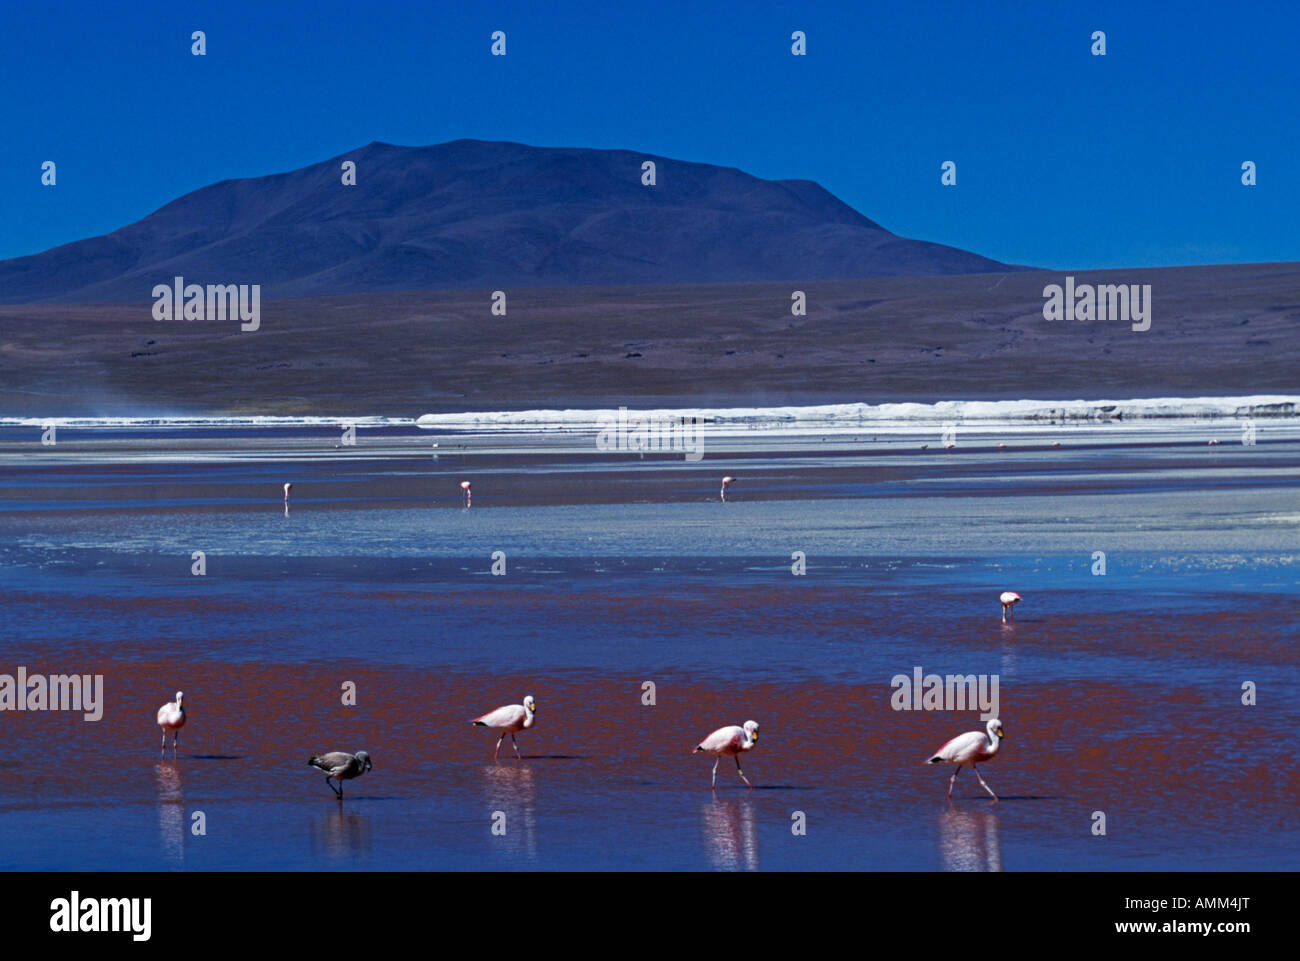 Flamingos ernähren sich von den Algen-reichen Gewässern des Laguna Colorada.  Die Algen geben dem See seine deutliche rote Farbe. Stockfoto